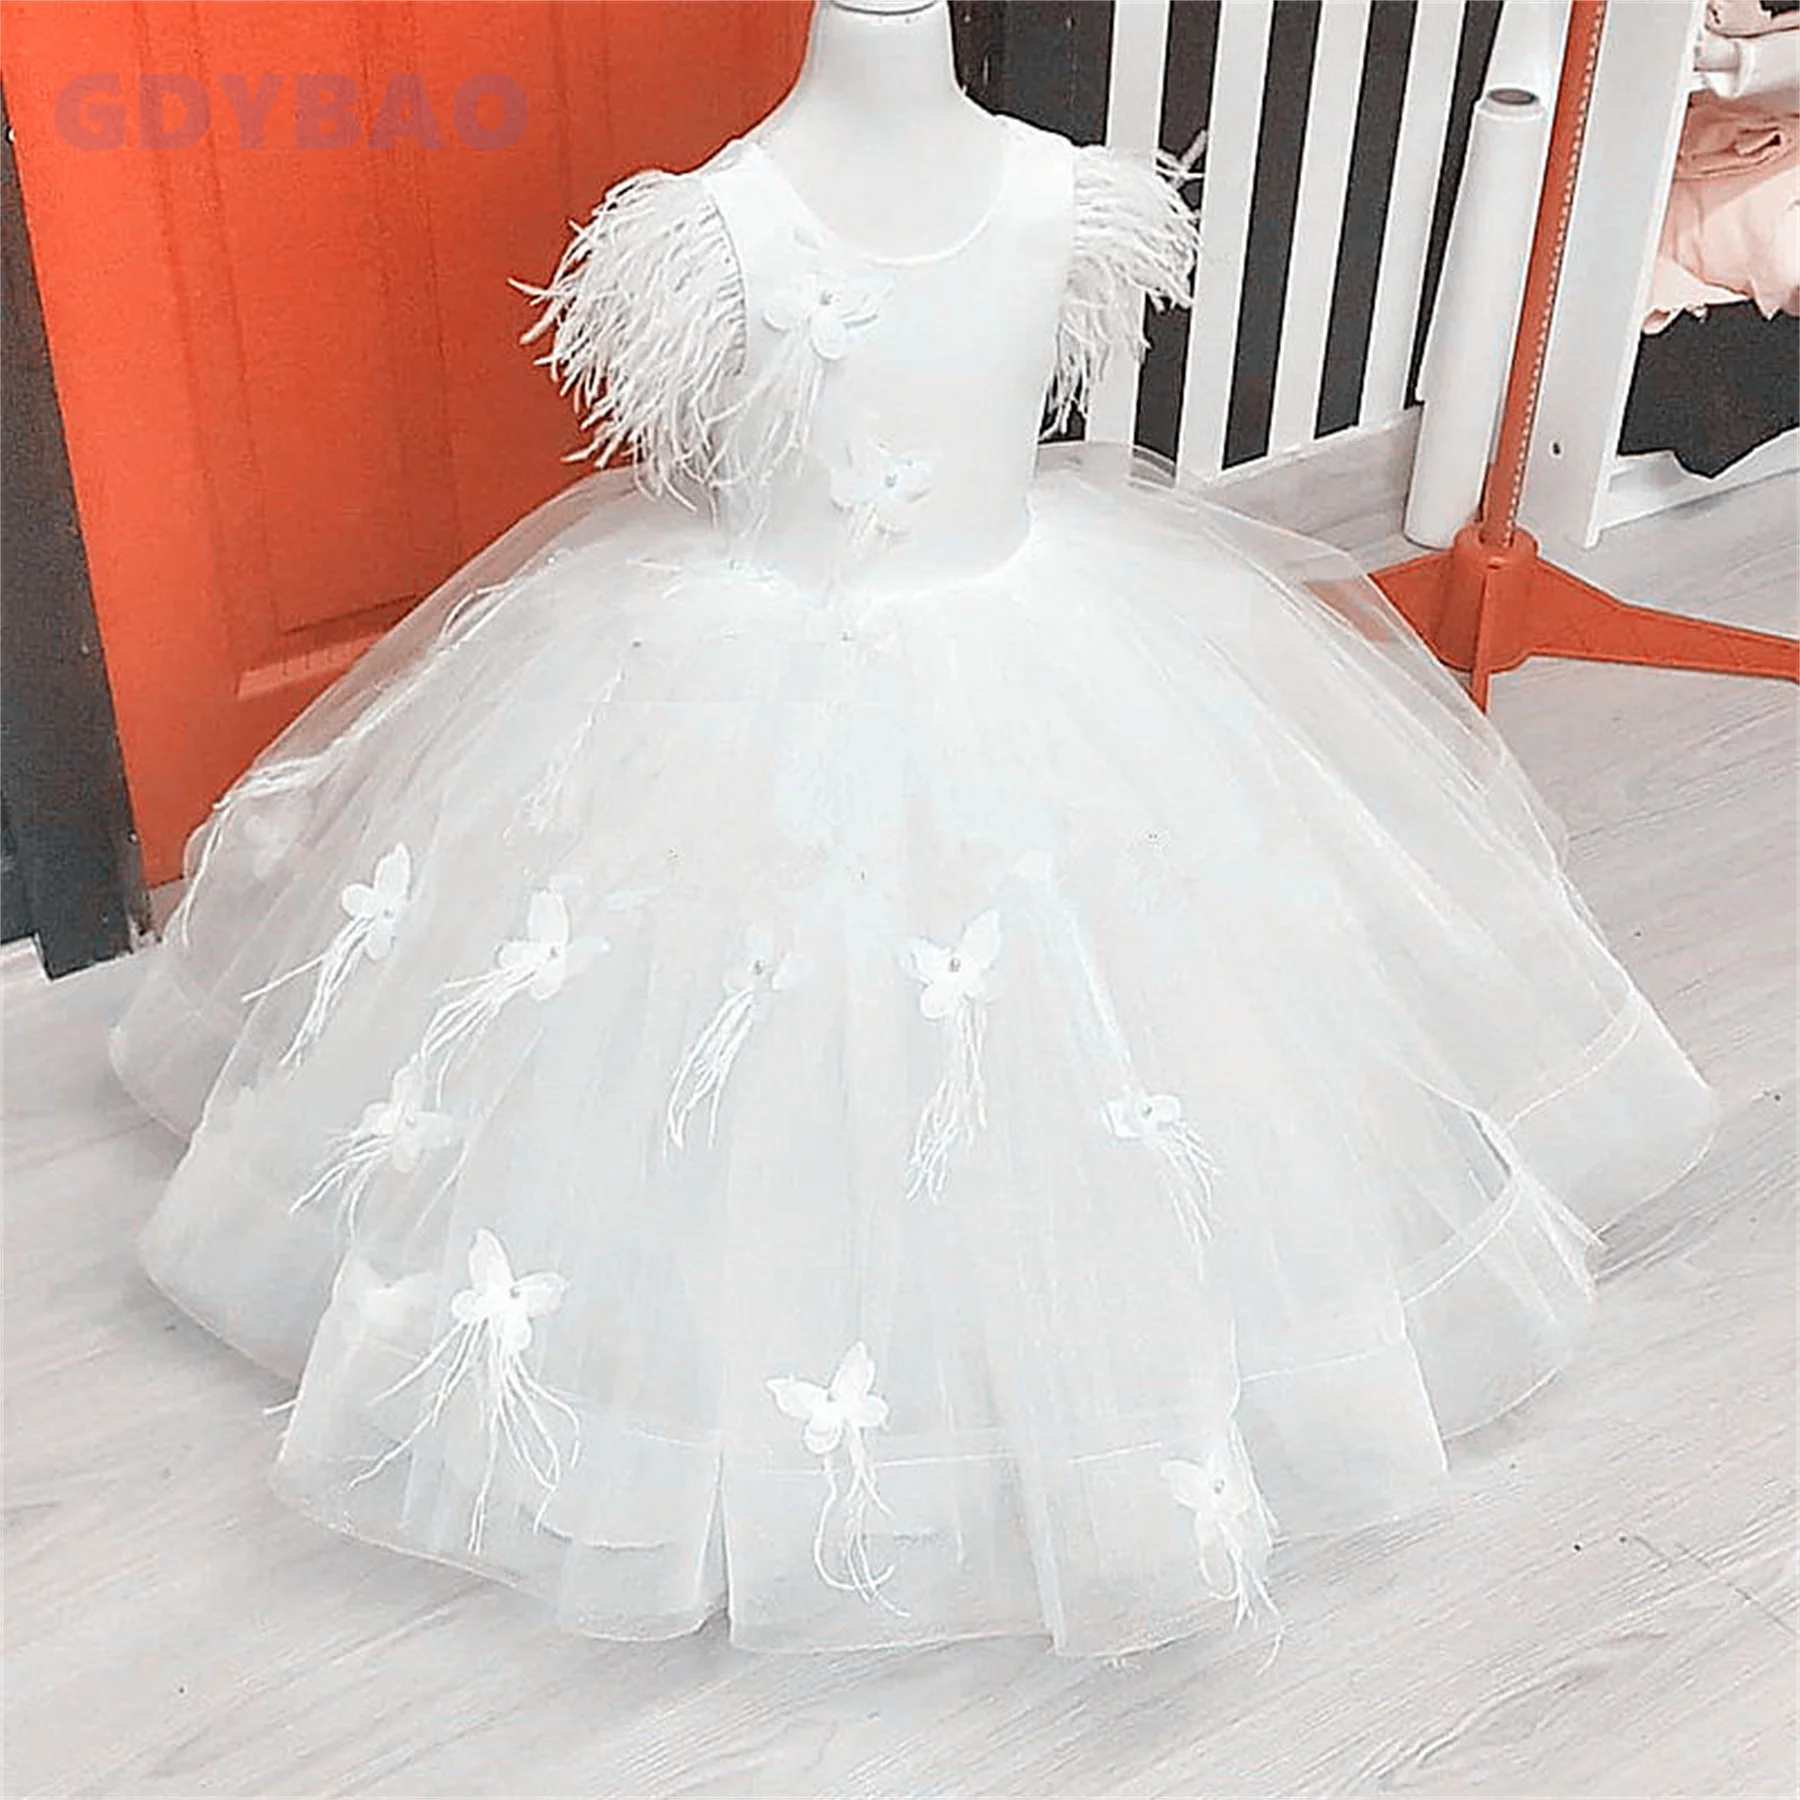 vestido-branco-puffy-3d-butterflies-feather-vestido-de-baile-florista-casamento-festa-de-aniversario-primeira-comunhao-beleza-concurso